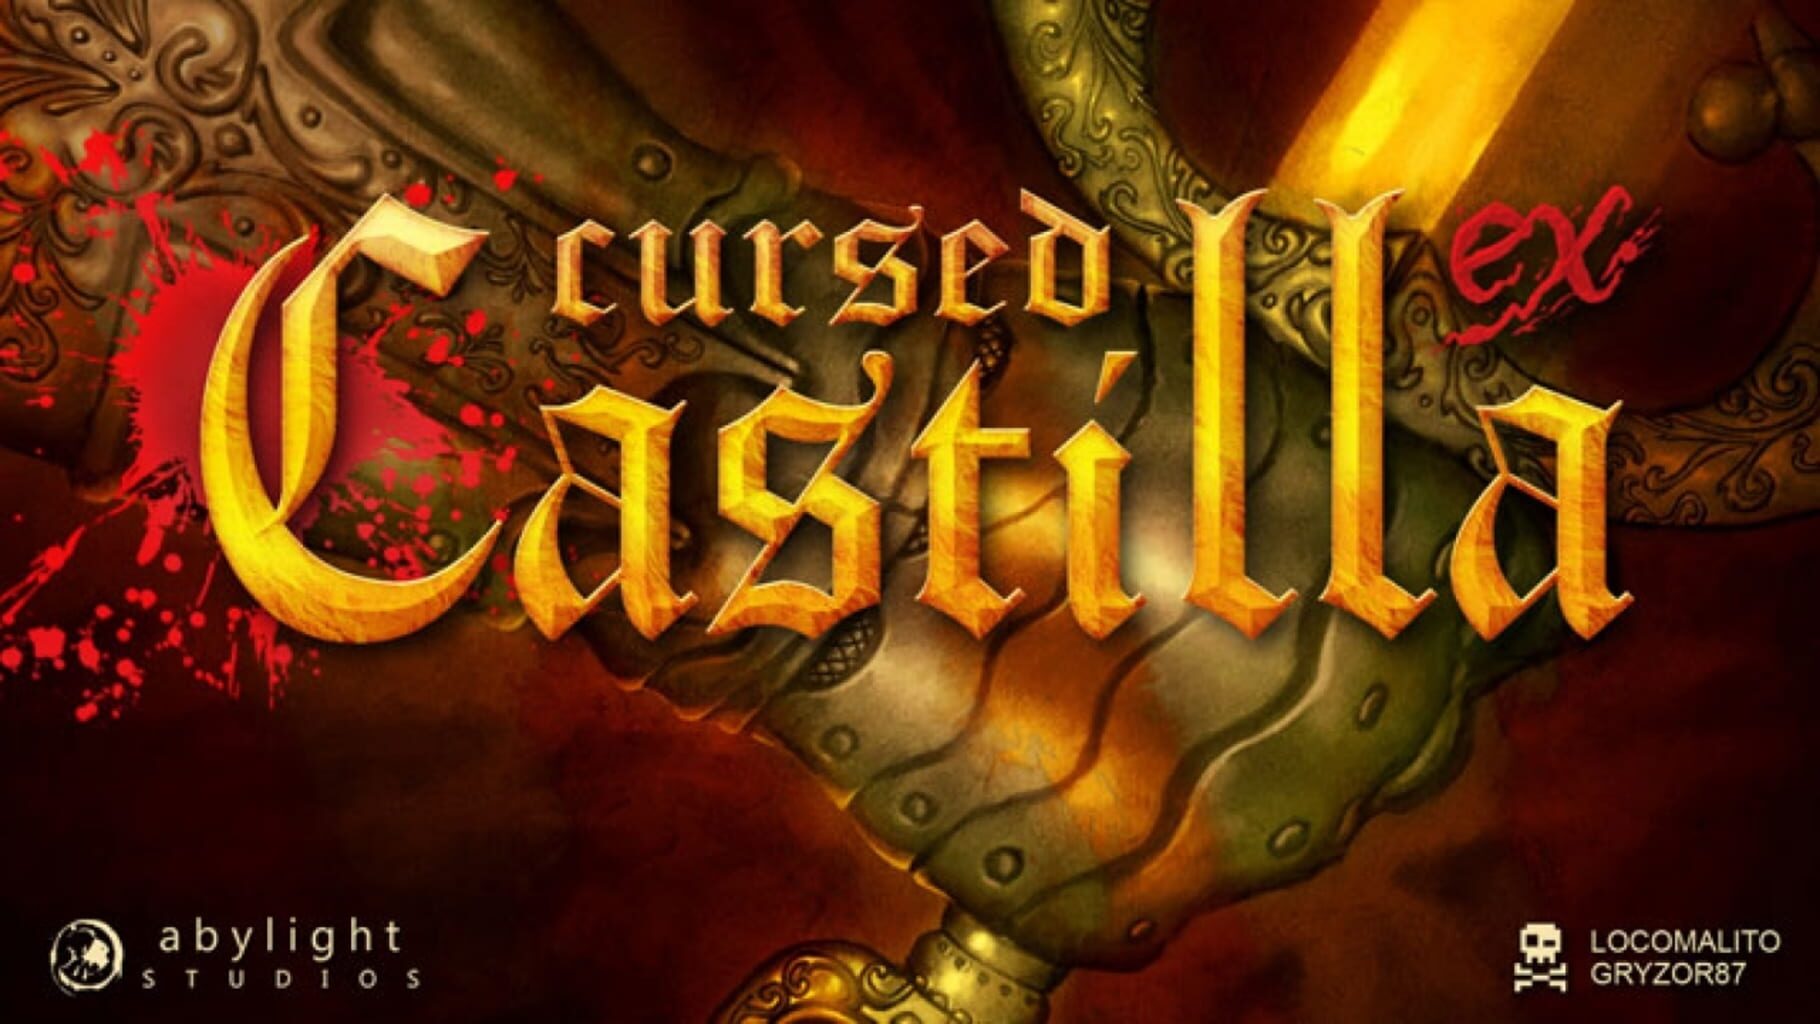 Artwork for Cursed Castilla EX